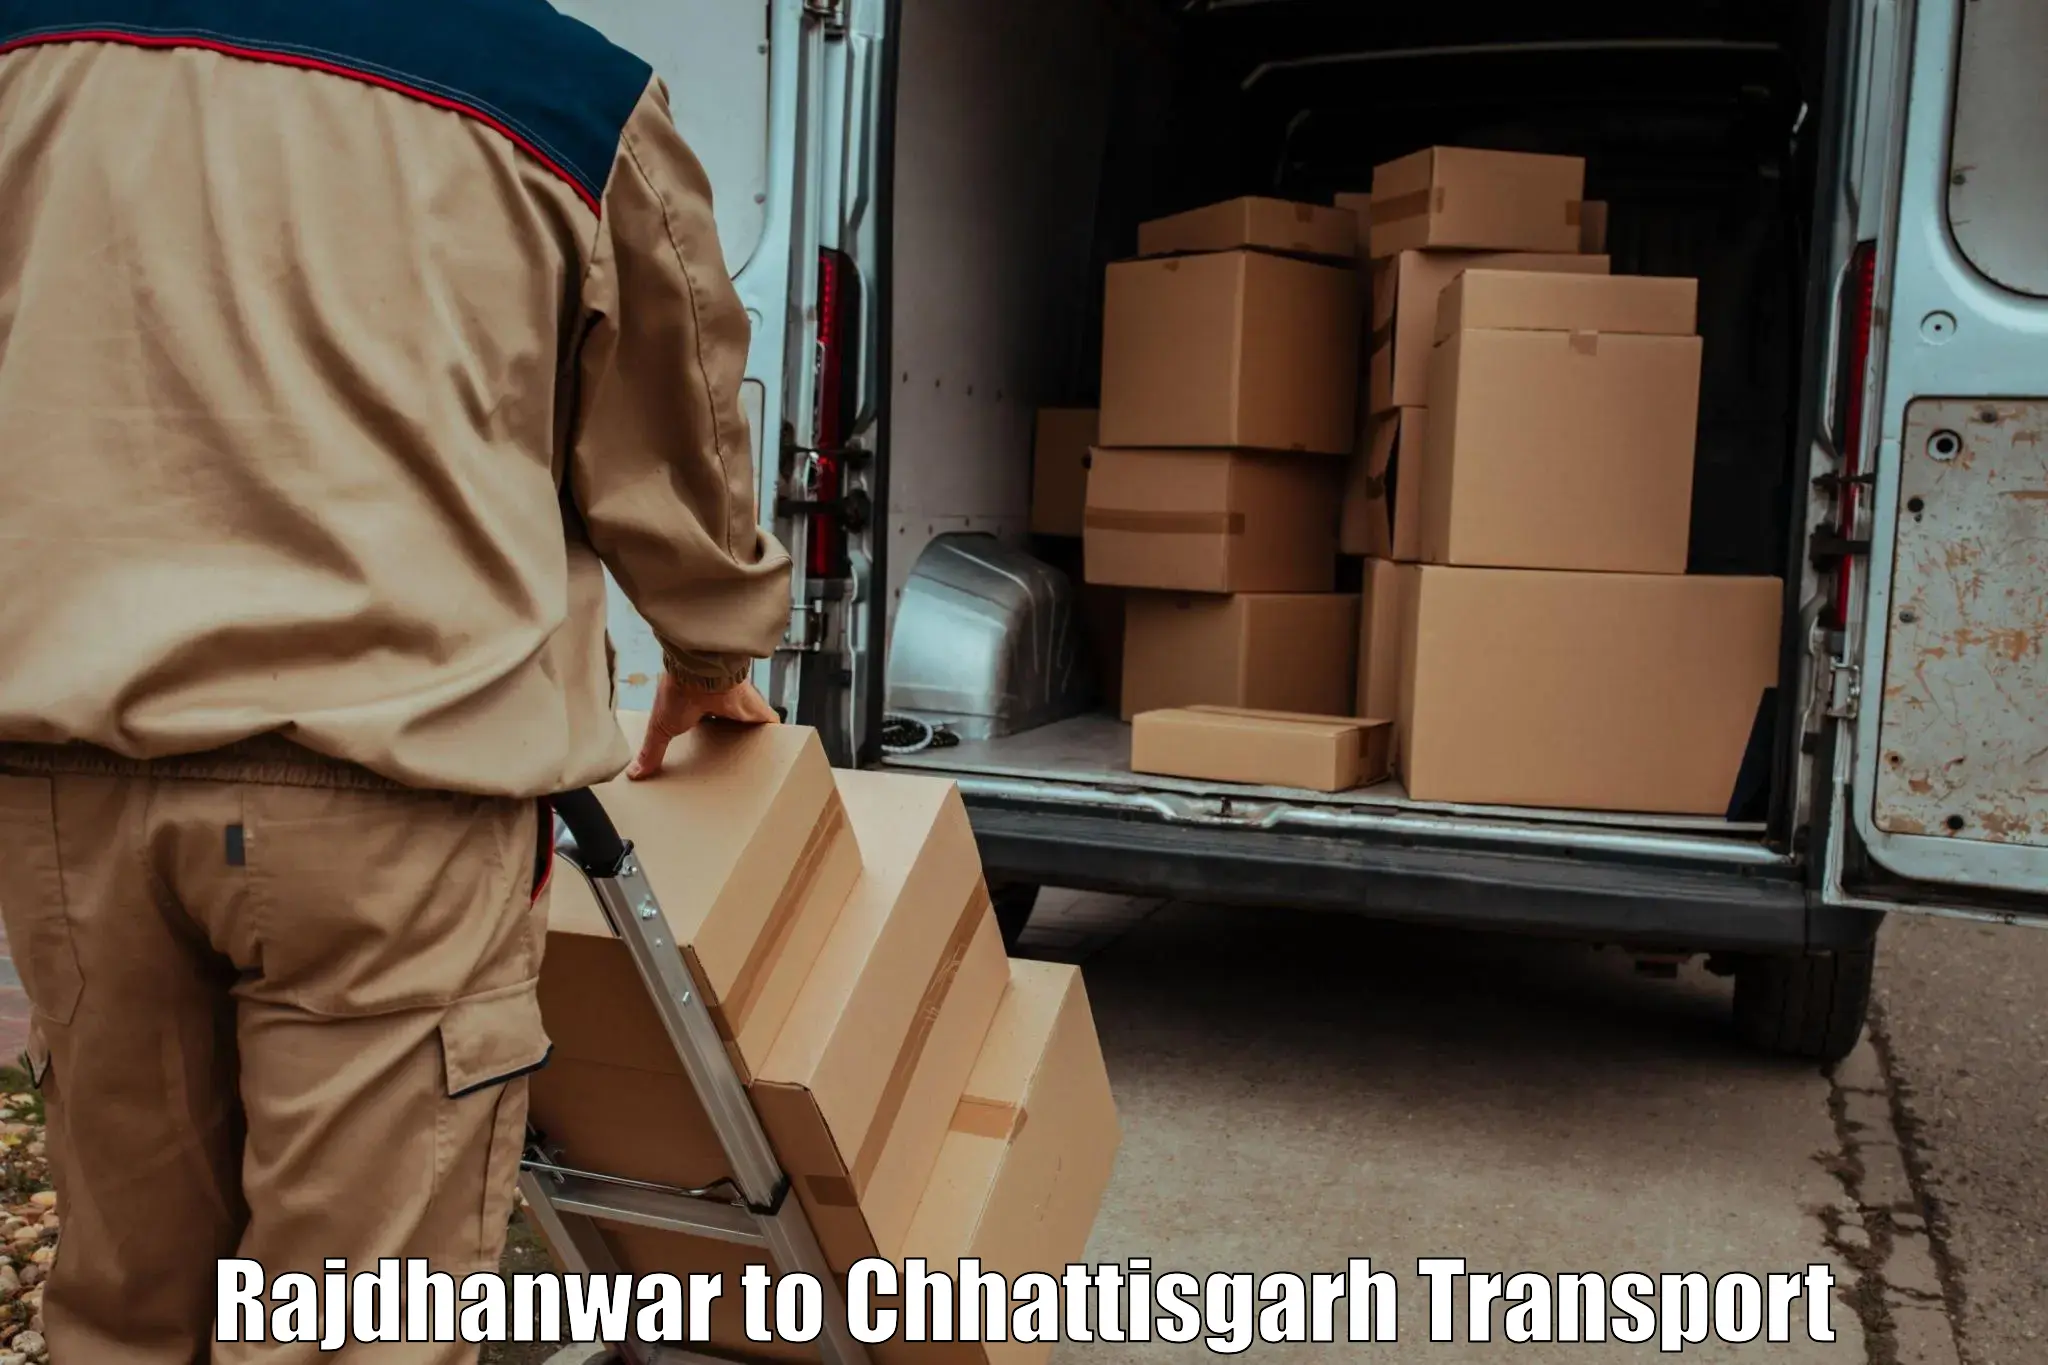 Two wheeler parcel service Rajdhanwar to bagbahra